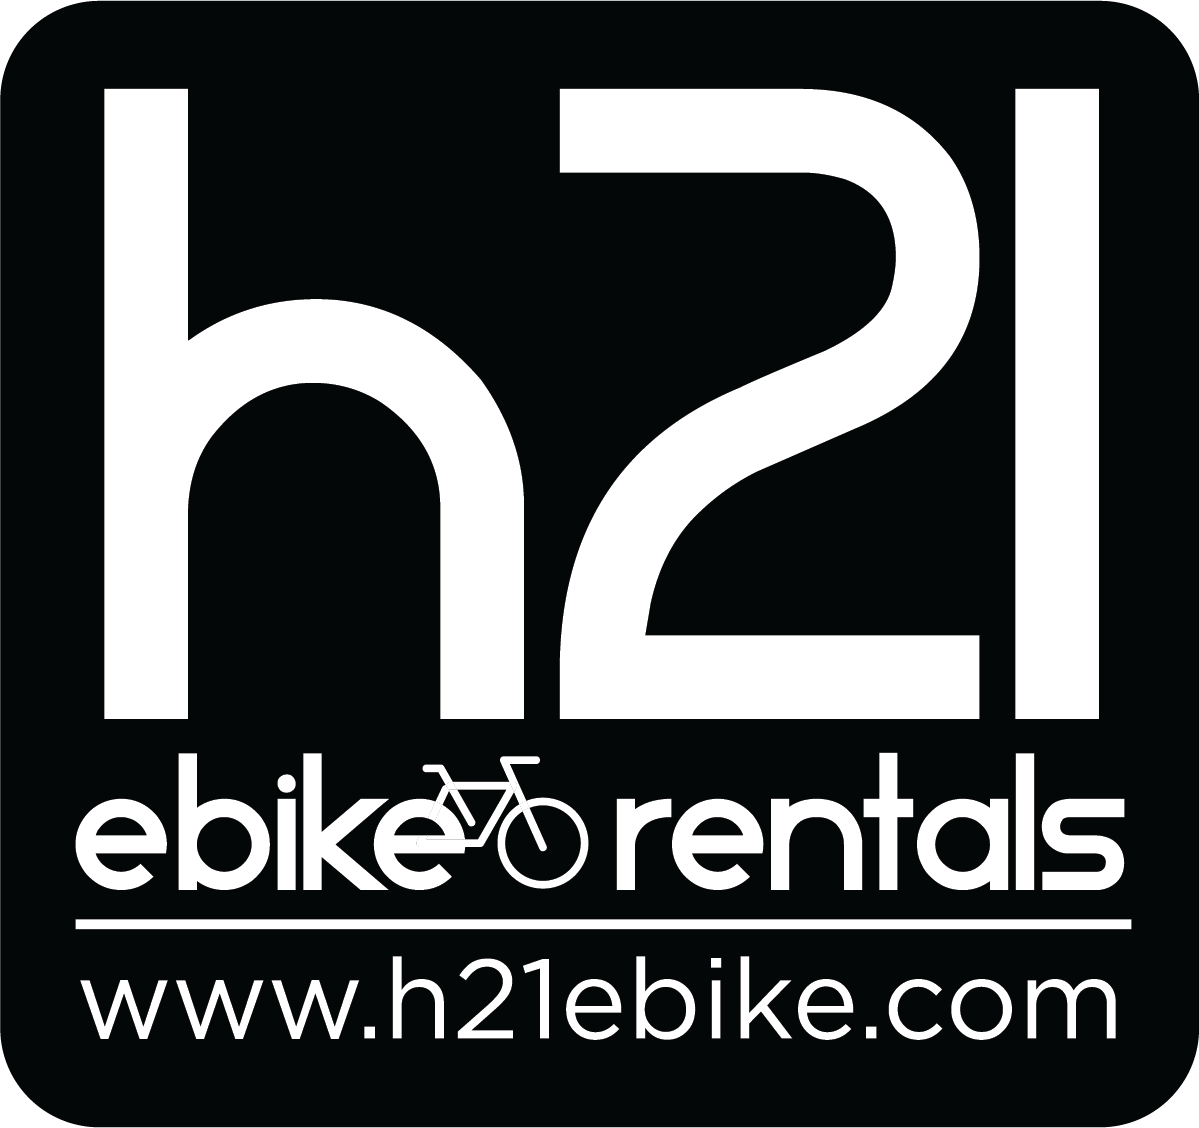 H21 E-Bike Rentals